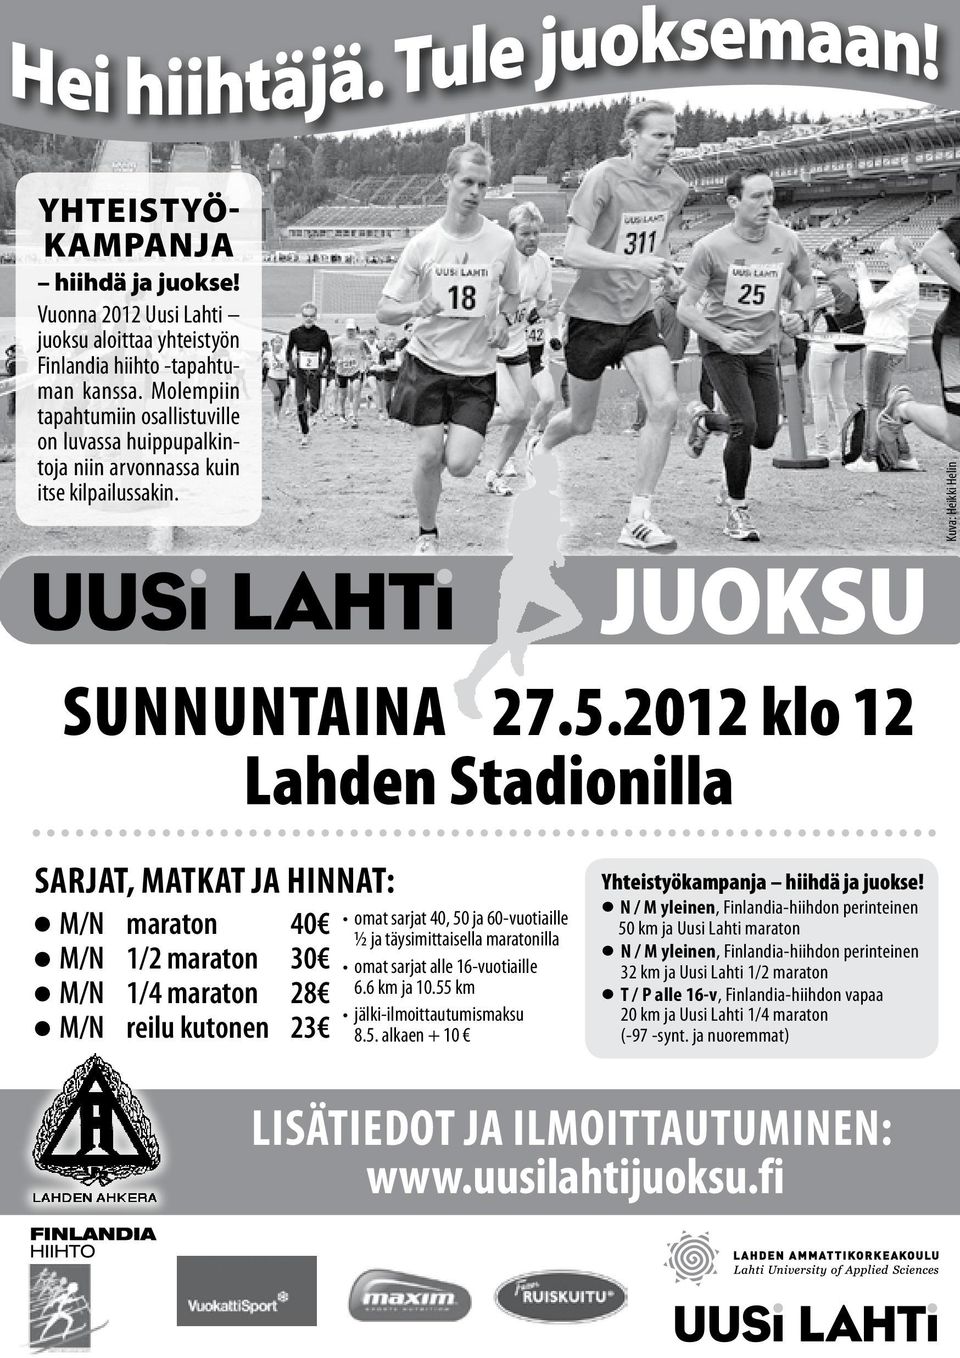 2012 klo 12 Lahden Stadionilla sarjat, matkat ja hinnat: M/N maraton 40 M/N 1/2 maraton 30 M/N 1/4 maraton 28 M/N reilu kutonen 23 omat sarjat 40, 50 ja 60-vuotiaille ½ ja täysimittaisella